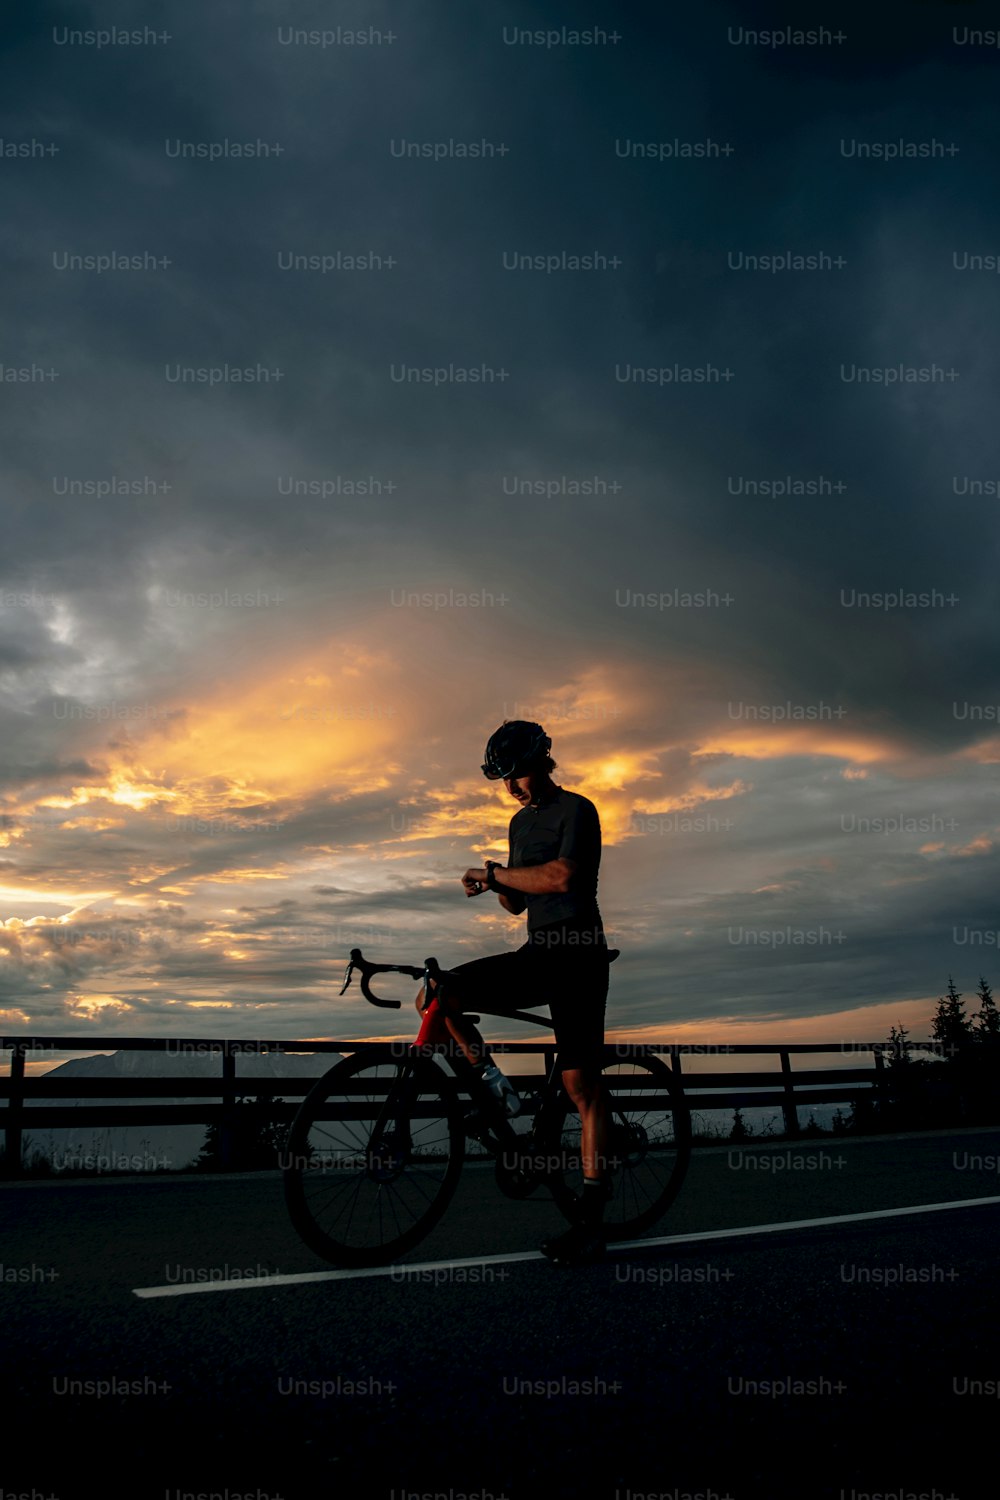 Un homme à vélo dans une rue sous un ciel nuageux